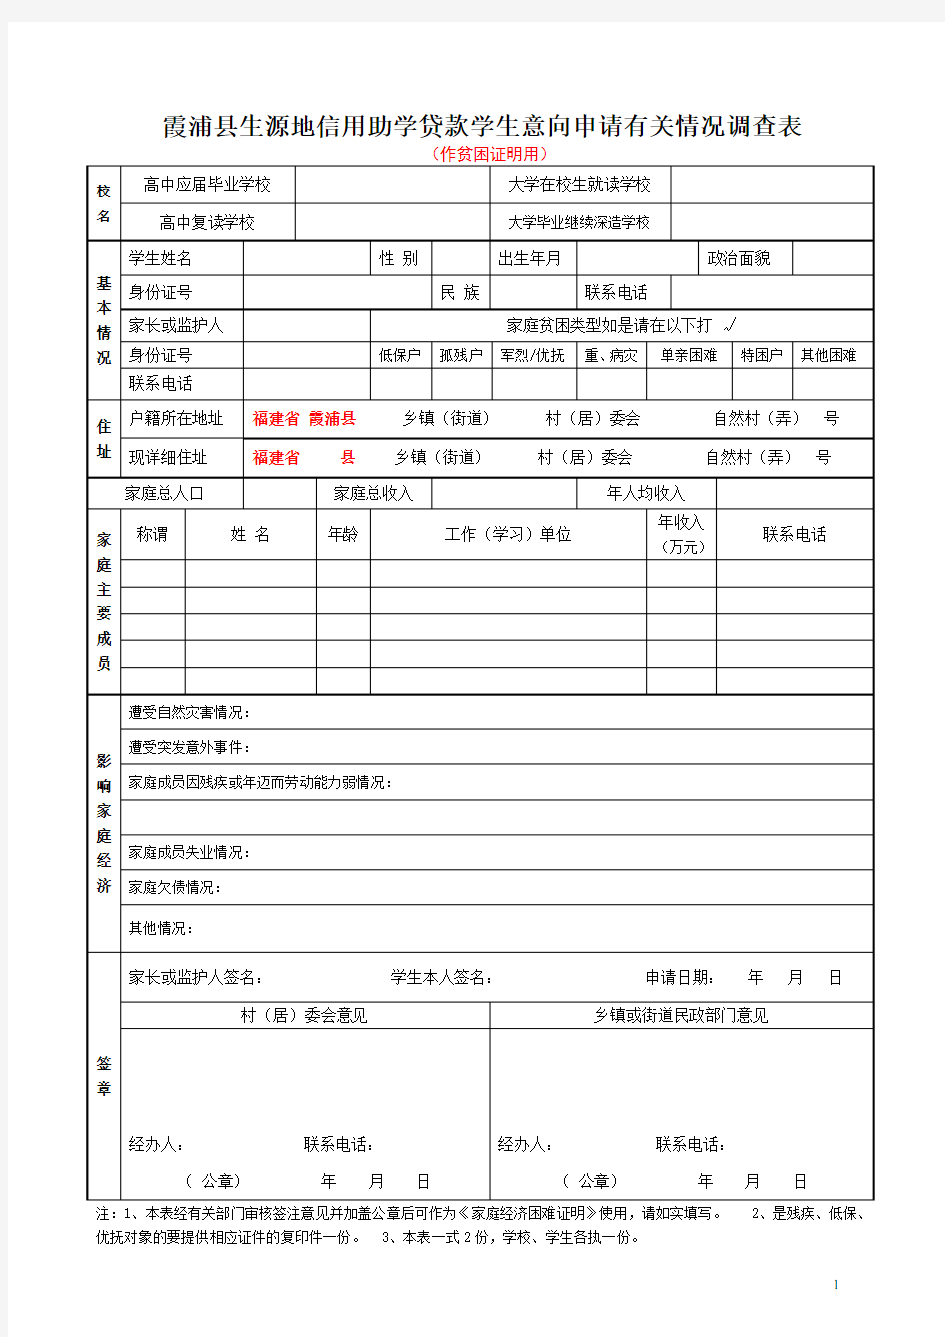 霞浦县生源地信用助学贷款学生意向申请有关情况调查表